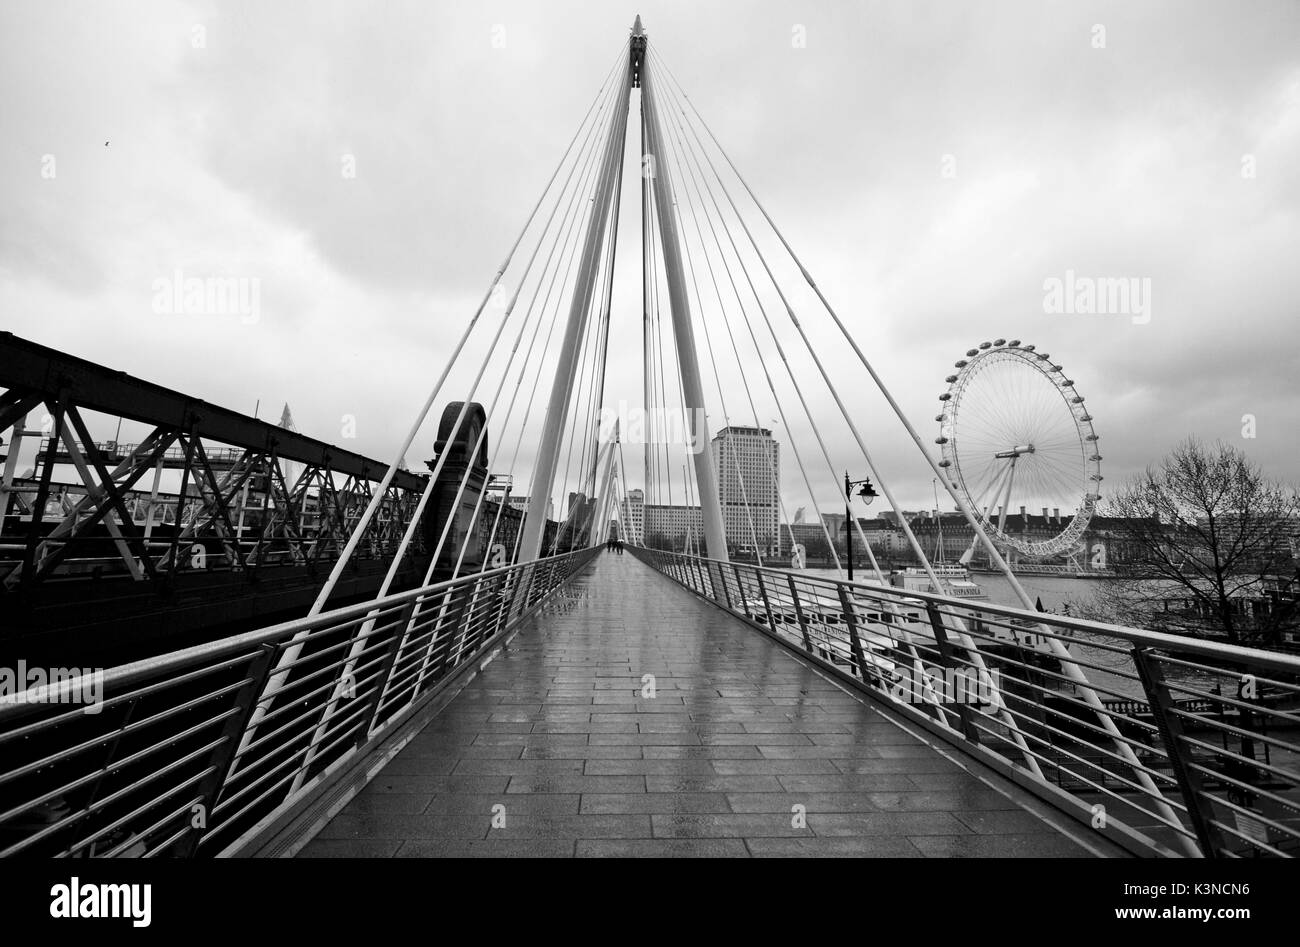 Der Golden Jubilee Bridge verfügt über eine moderne Architektur erinnert an die Dreiecke und auf der linken Seite das London Eye, an einem Tag mit Regen. London, England, Europa. Stockfoto